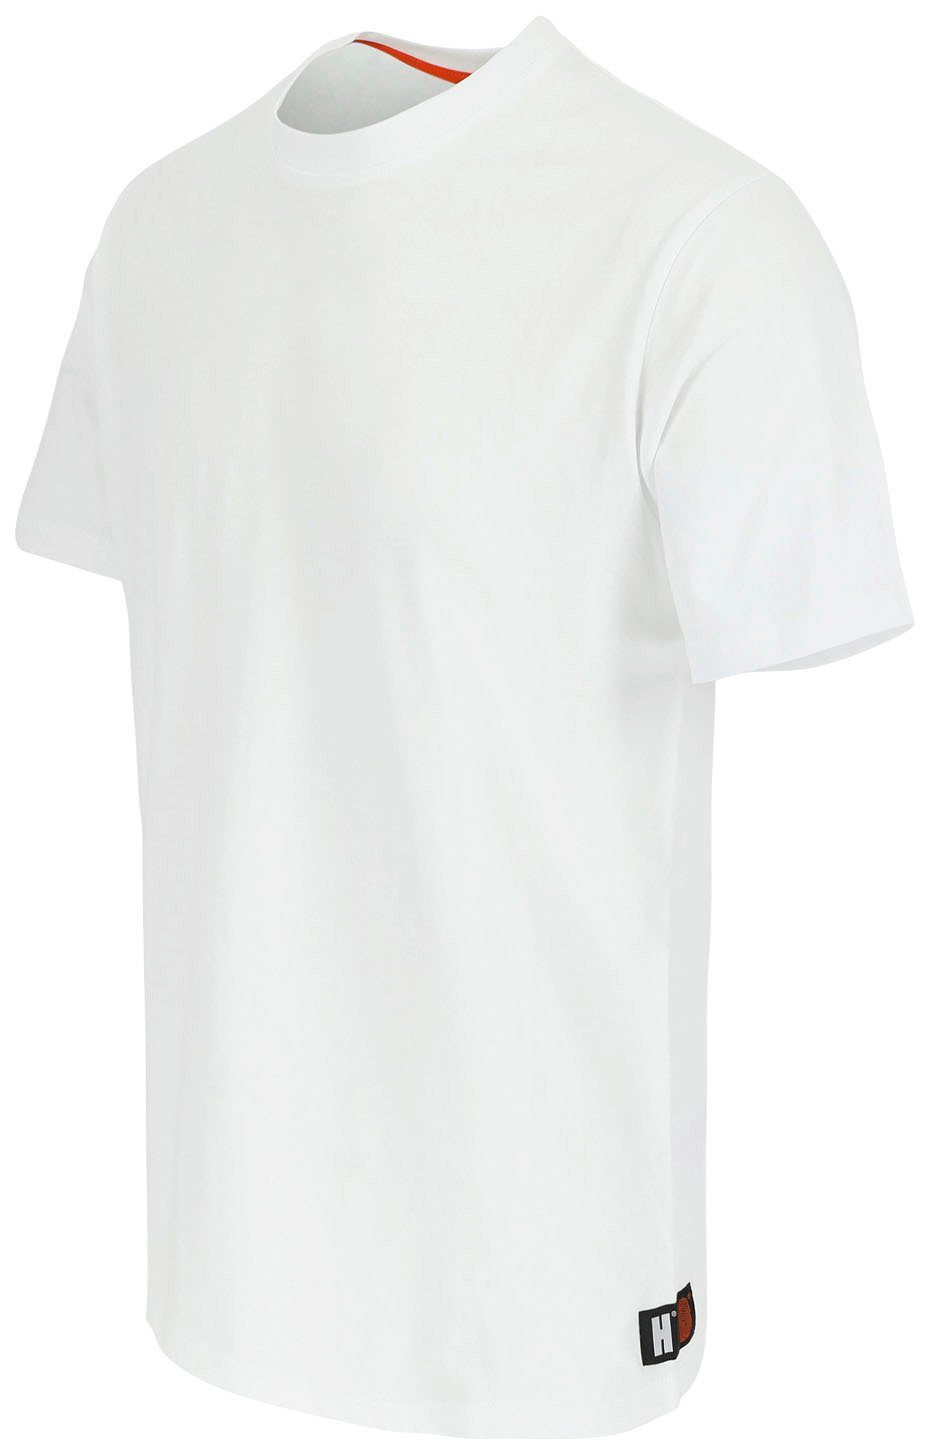 Ärmel, T-Shirt kurze Callius Rundhalsausschnitt, Rippstrickkragen Herock Herock®-Aufdruck, weiß Ärmel kurze T-Shirt